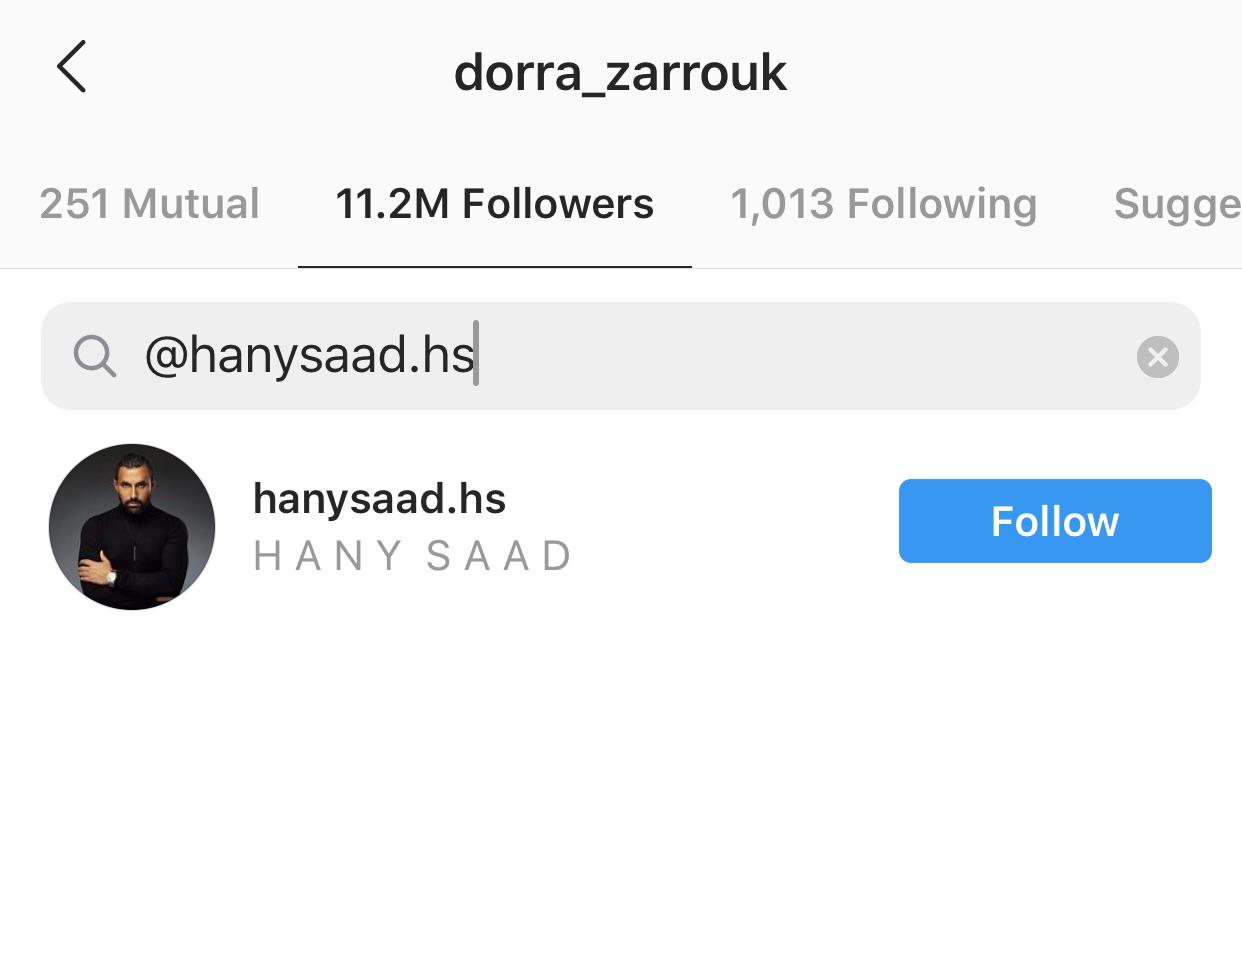 هاني سعد يتواجد في قائمة متابعين درة